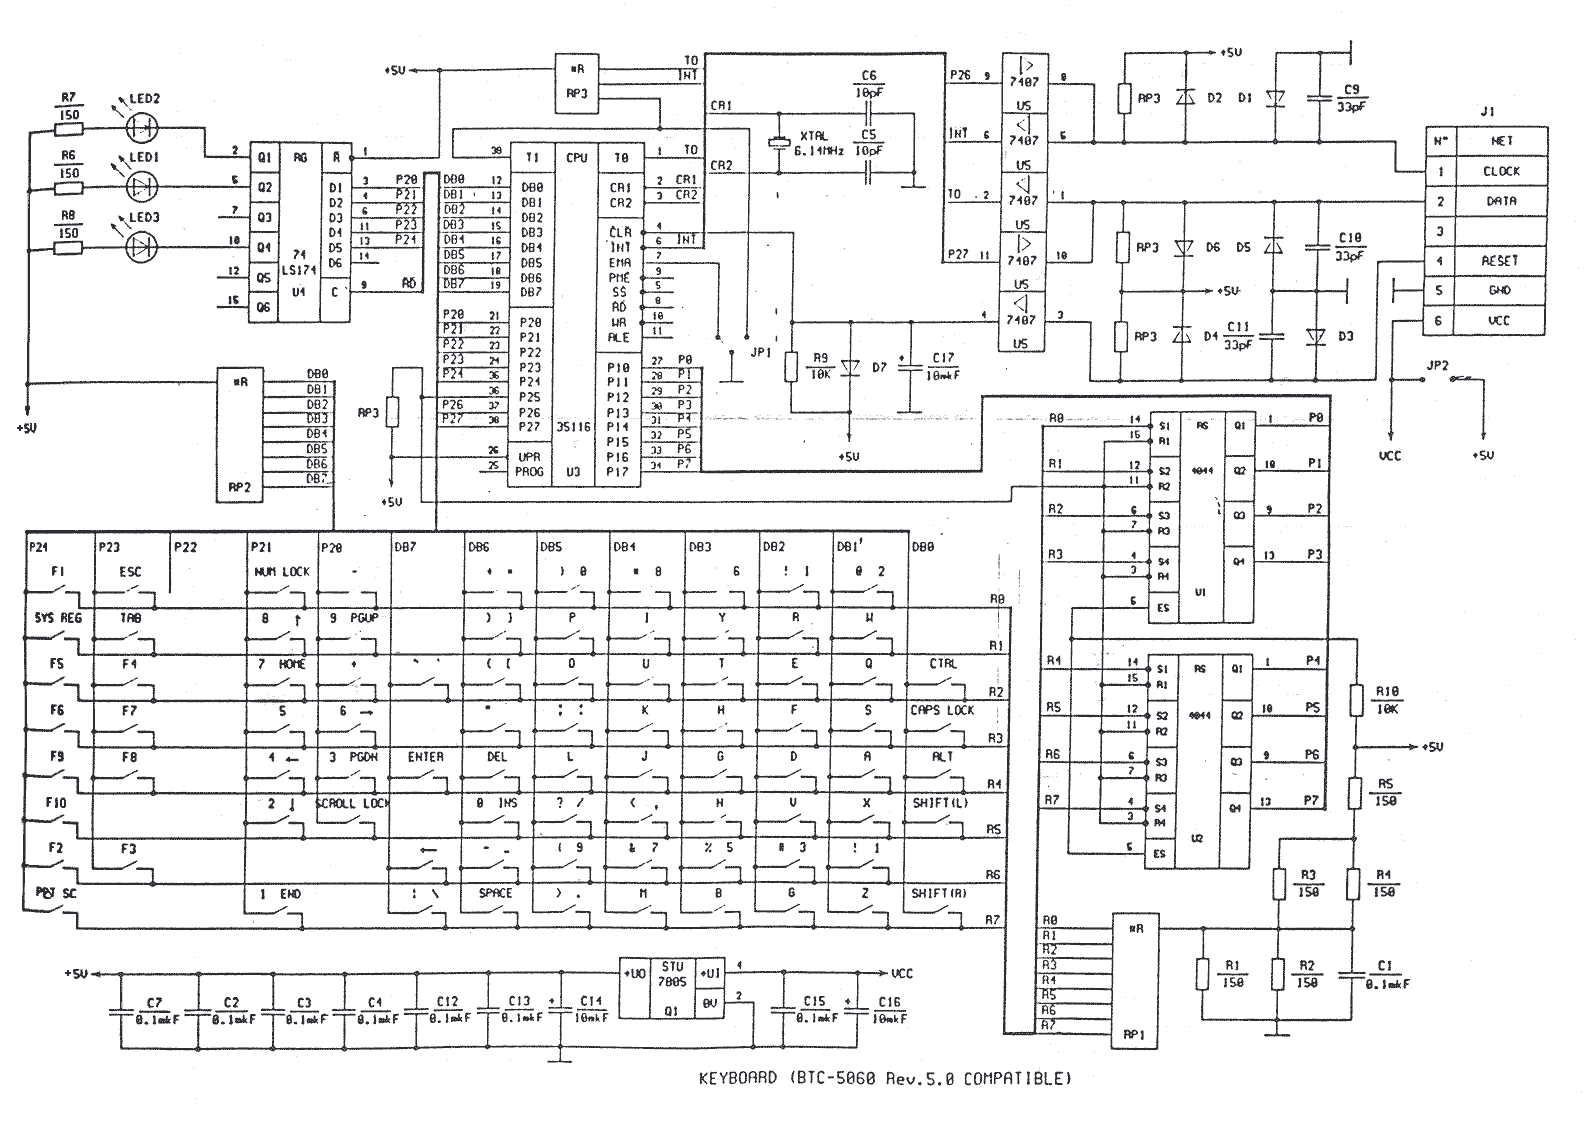 Основные компоненты общей функциональной схемы работы компьютера клавиатура монитор